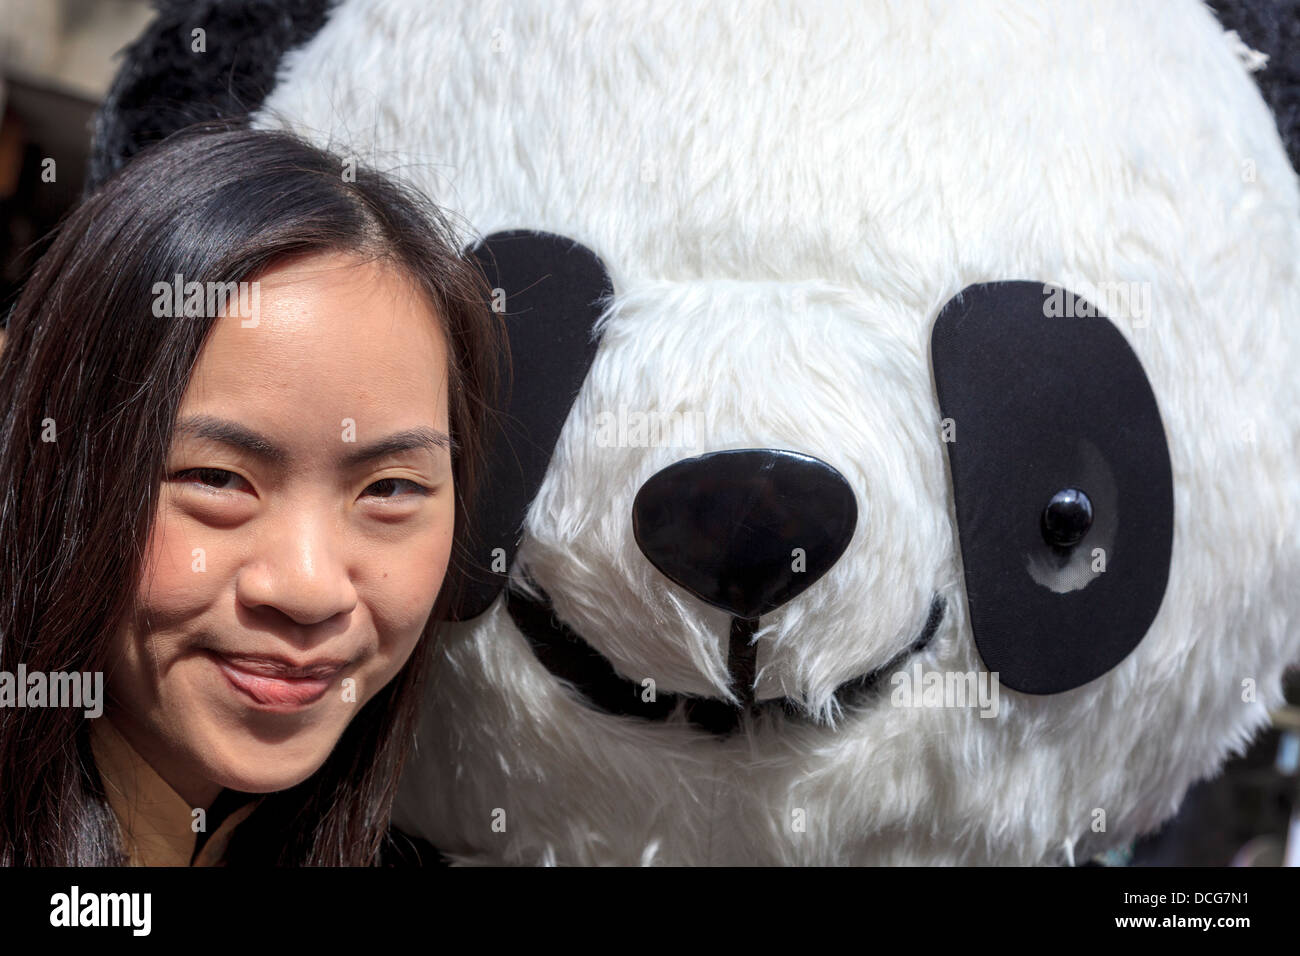 Julie Chewng-Inhin, effectuant à l'Edinburgh Fringe Festival avec un grand panda jouet, High Street, Edinburgh, Ecosse, Royaume-Uni Banque D'Images